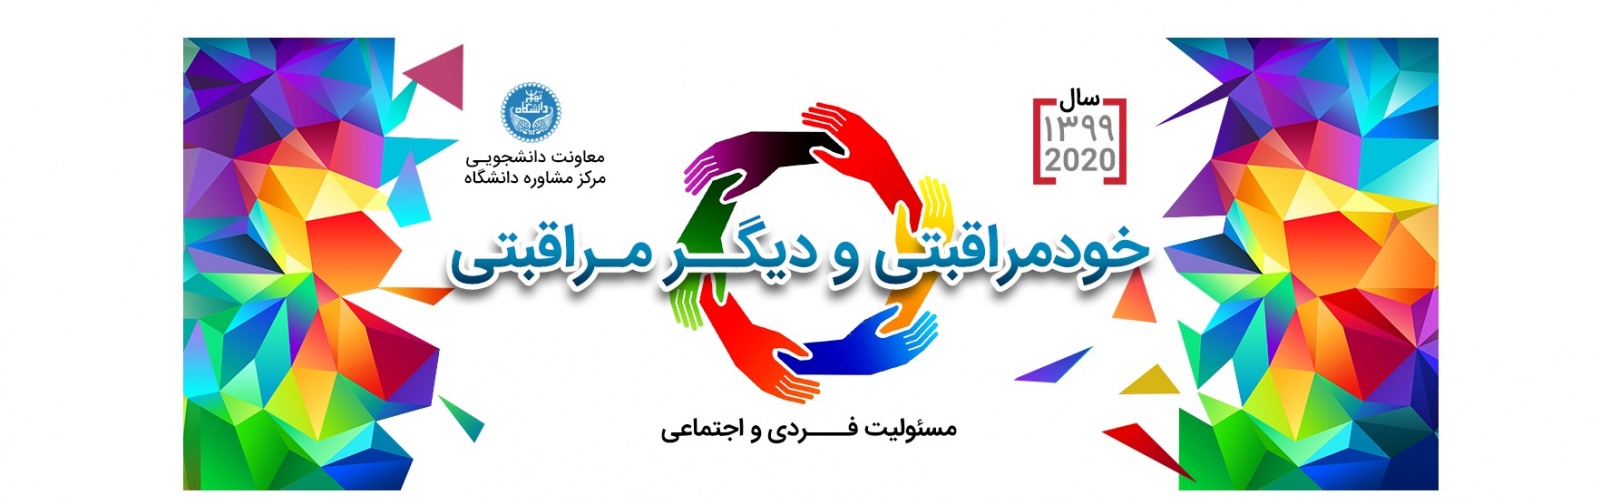 مرکز خدمات روانشناسی و مشاوره دانشگاه تهران
